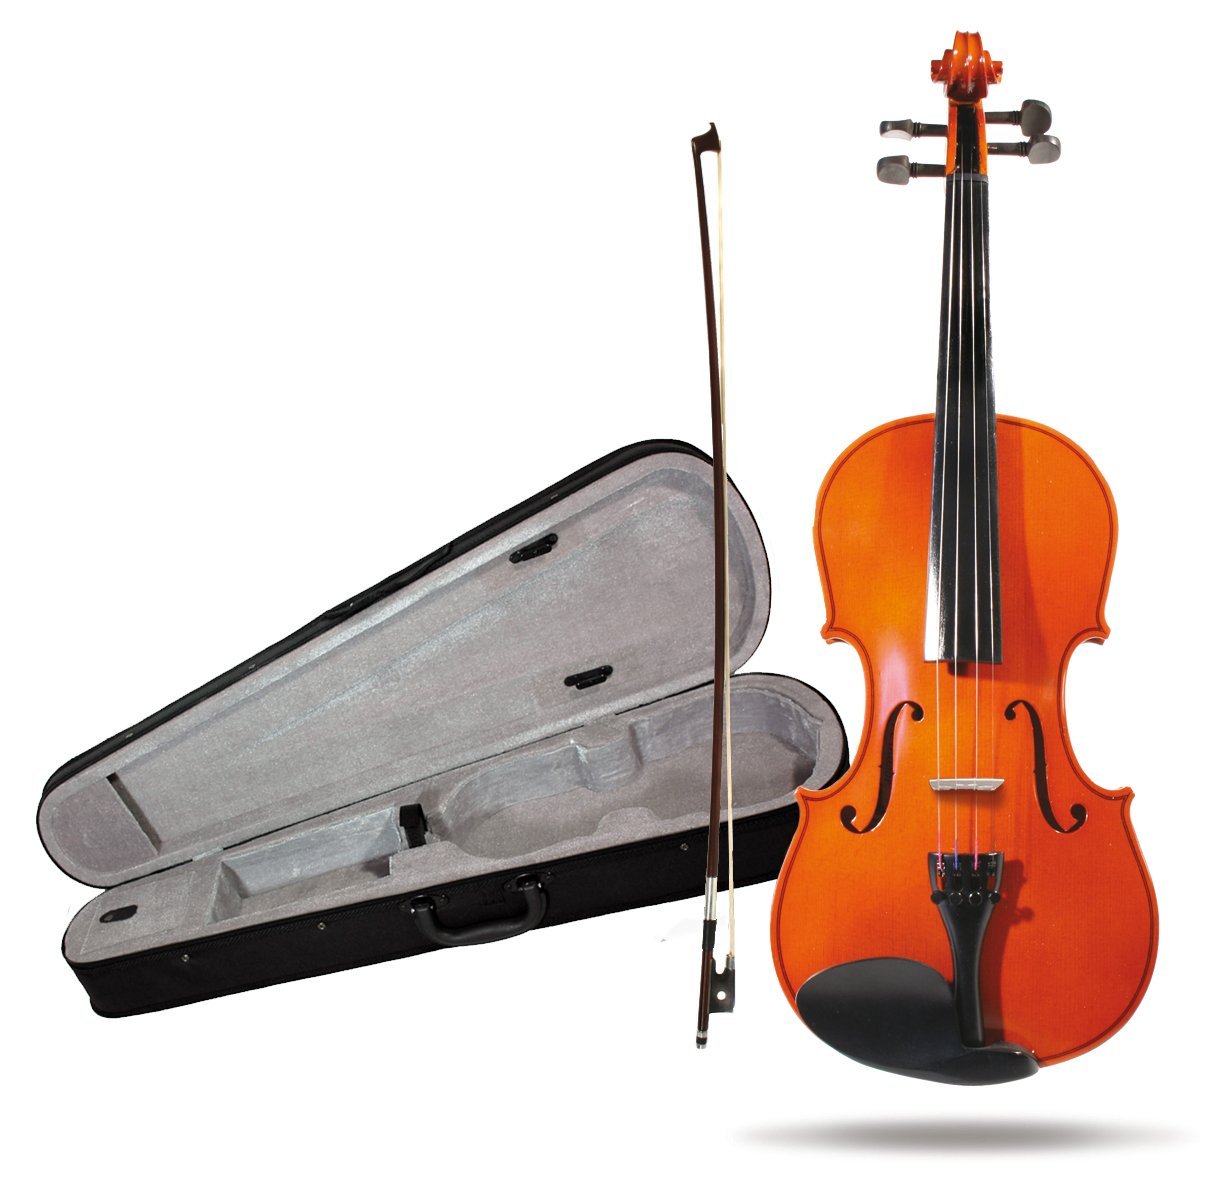 Violines baratos online - El Musical